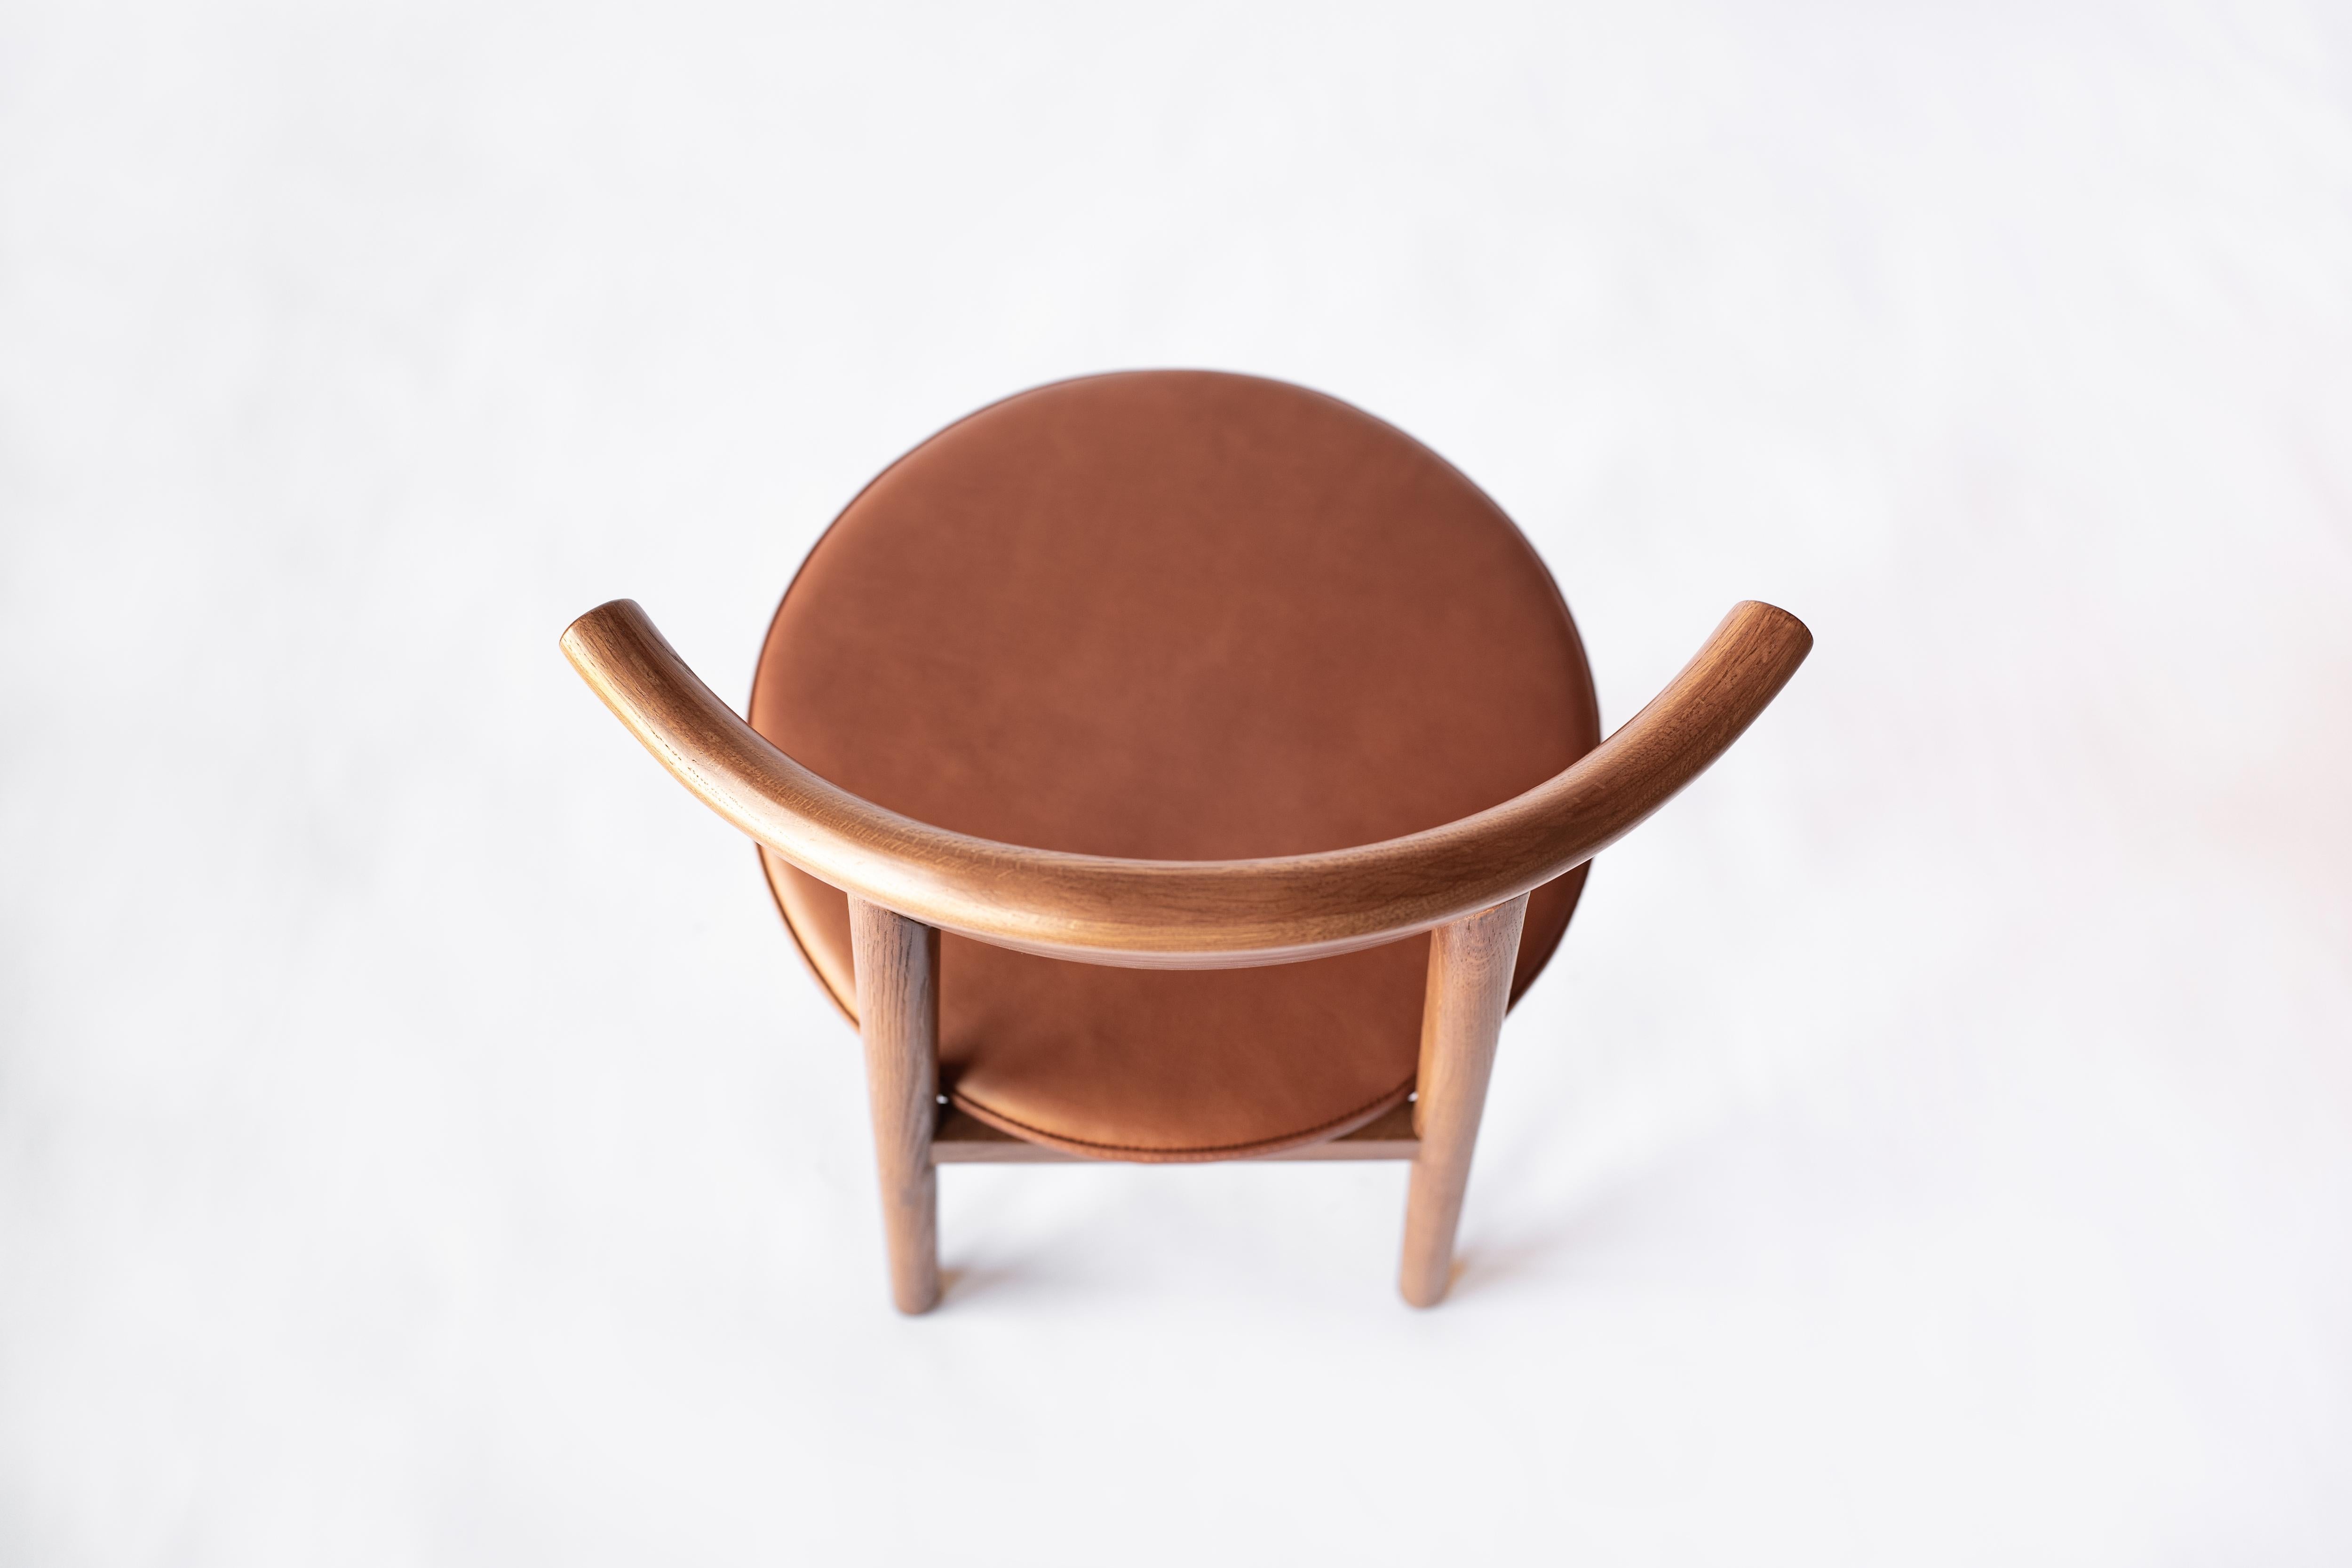 Sun at Six est un studio de design de meubles contemporains qui travaille avec des maîtres menuisiers chinois traditionnels pour fabriquer ses pièces à la main en utilisant la menuiserie traditionnelle. La chaise Ember est un siège polyvalent